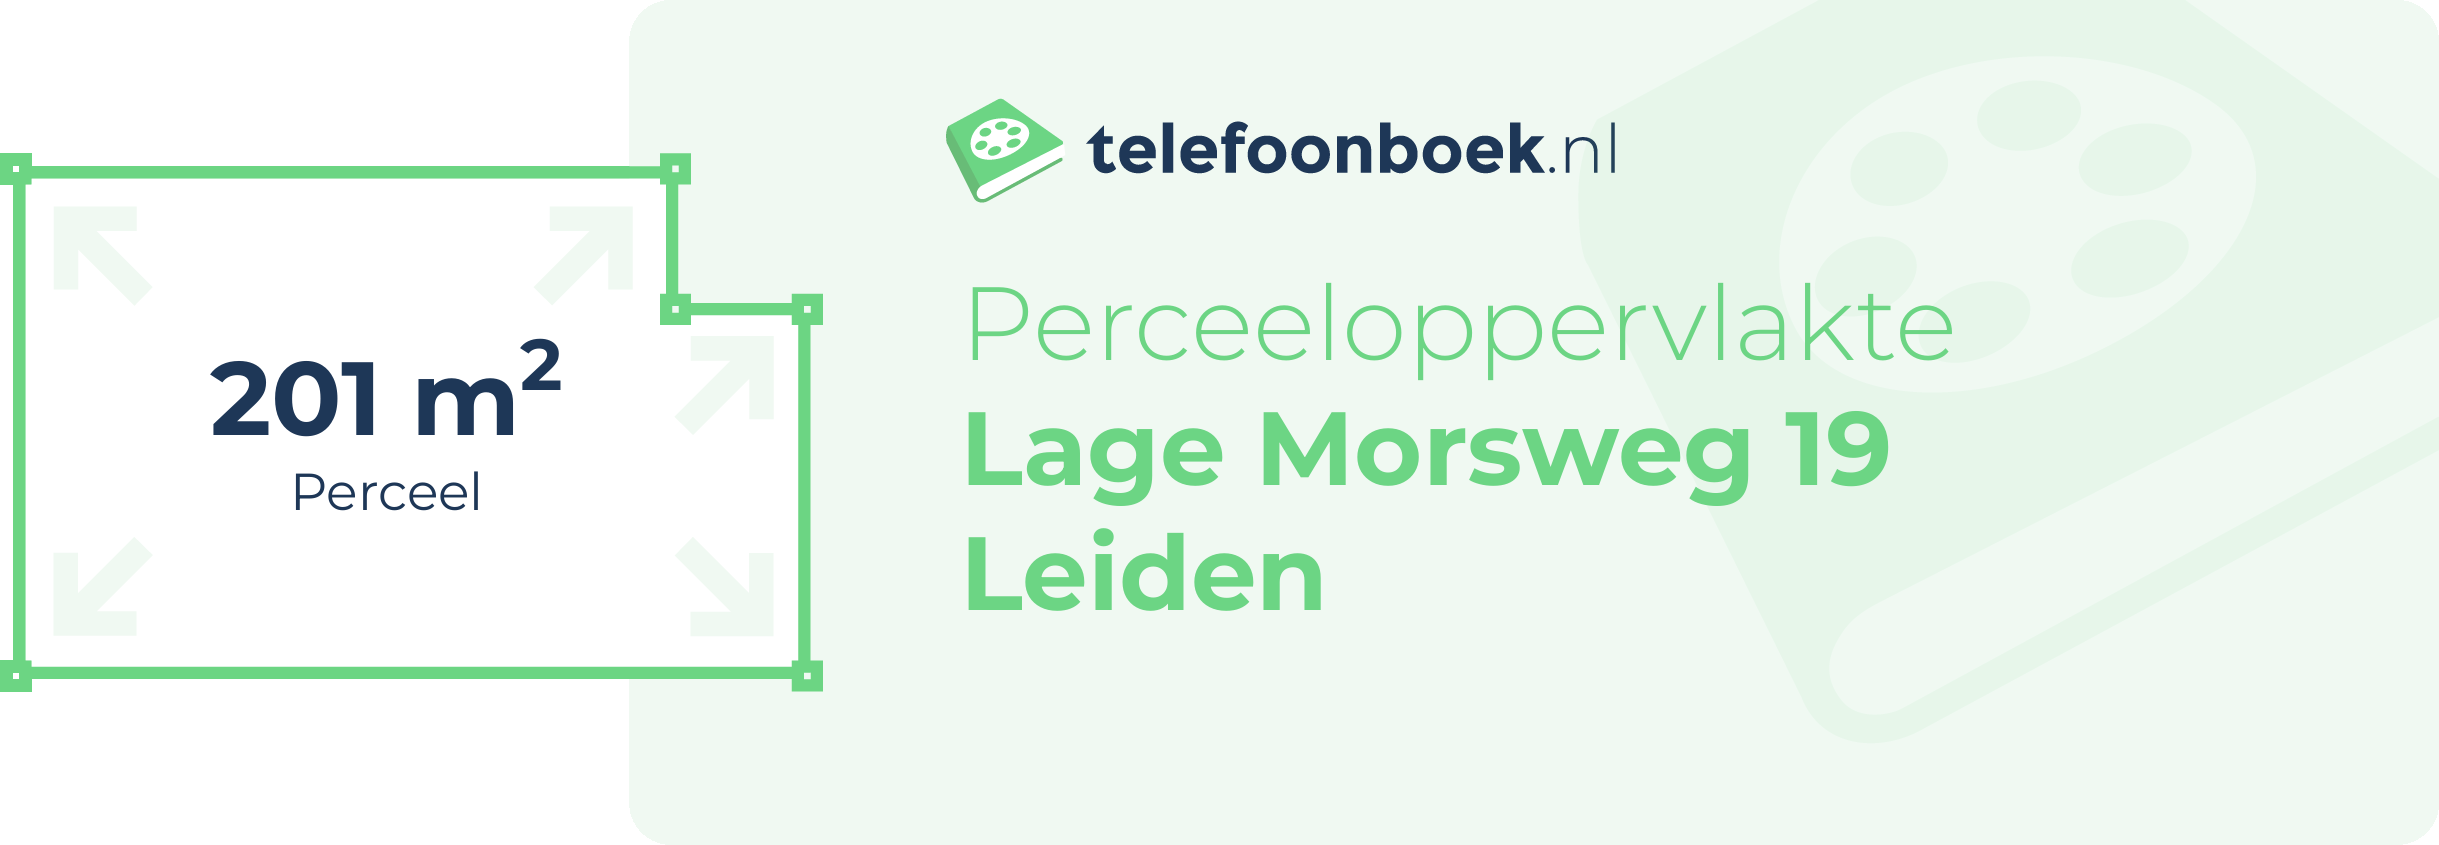 Perceeloppervlakte Lage Morsweg 19 Leiden